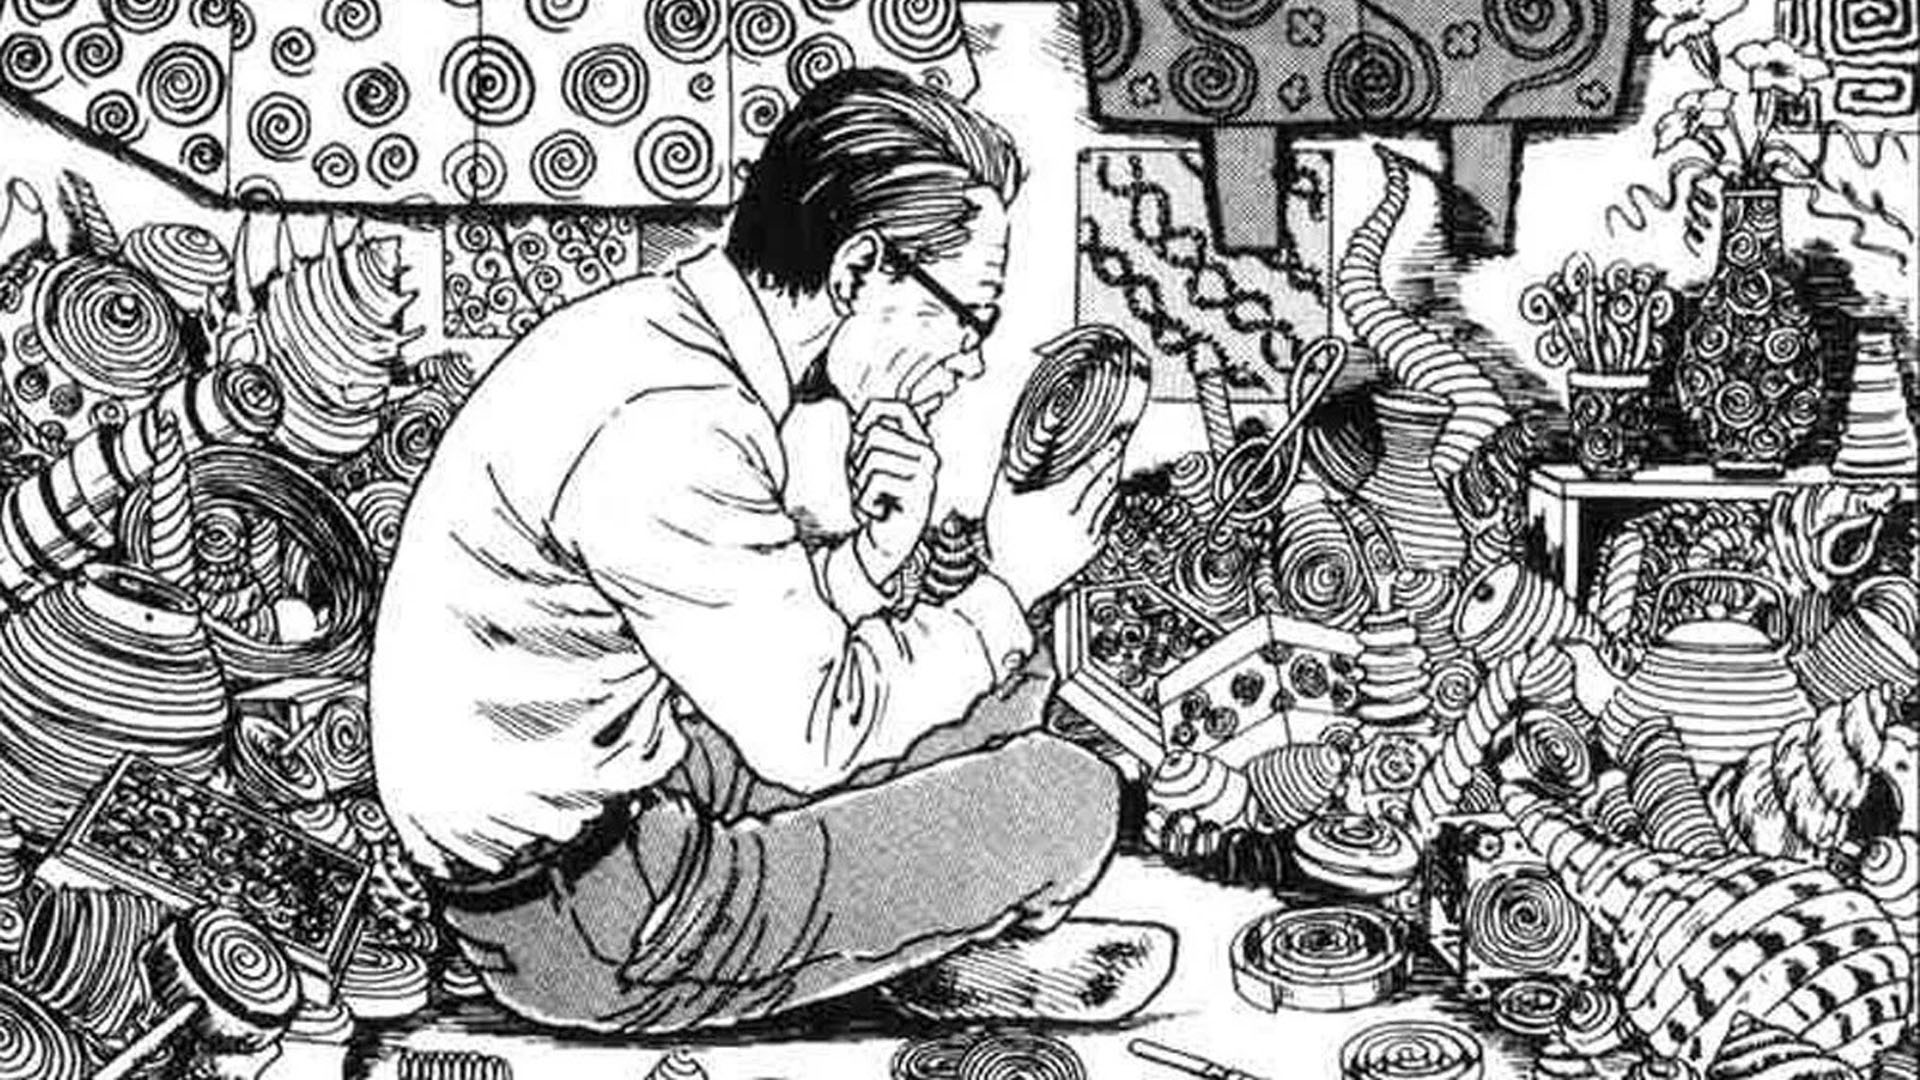 Horror manga icon Junji Ito on life. 